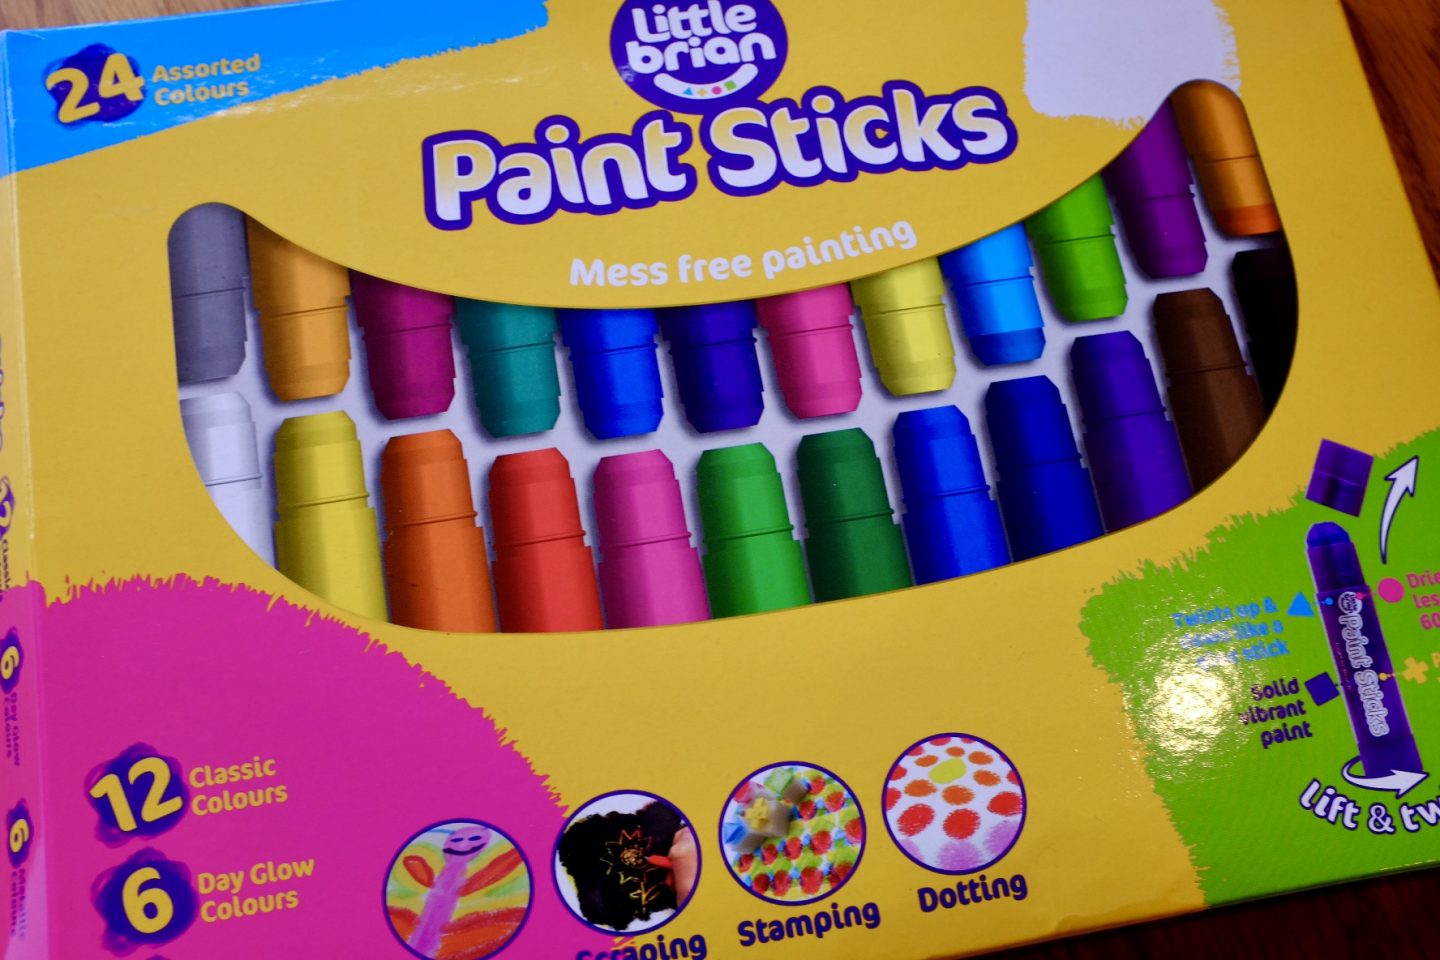 Little Brian Paint sticks